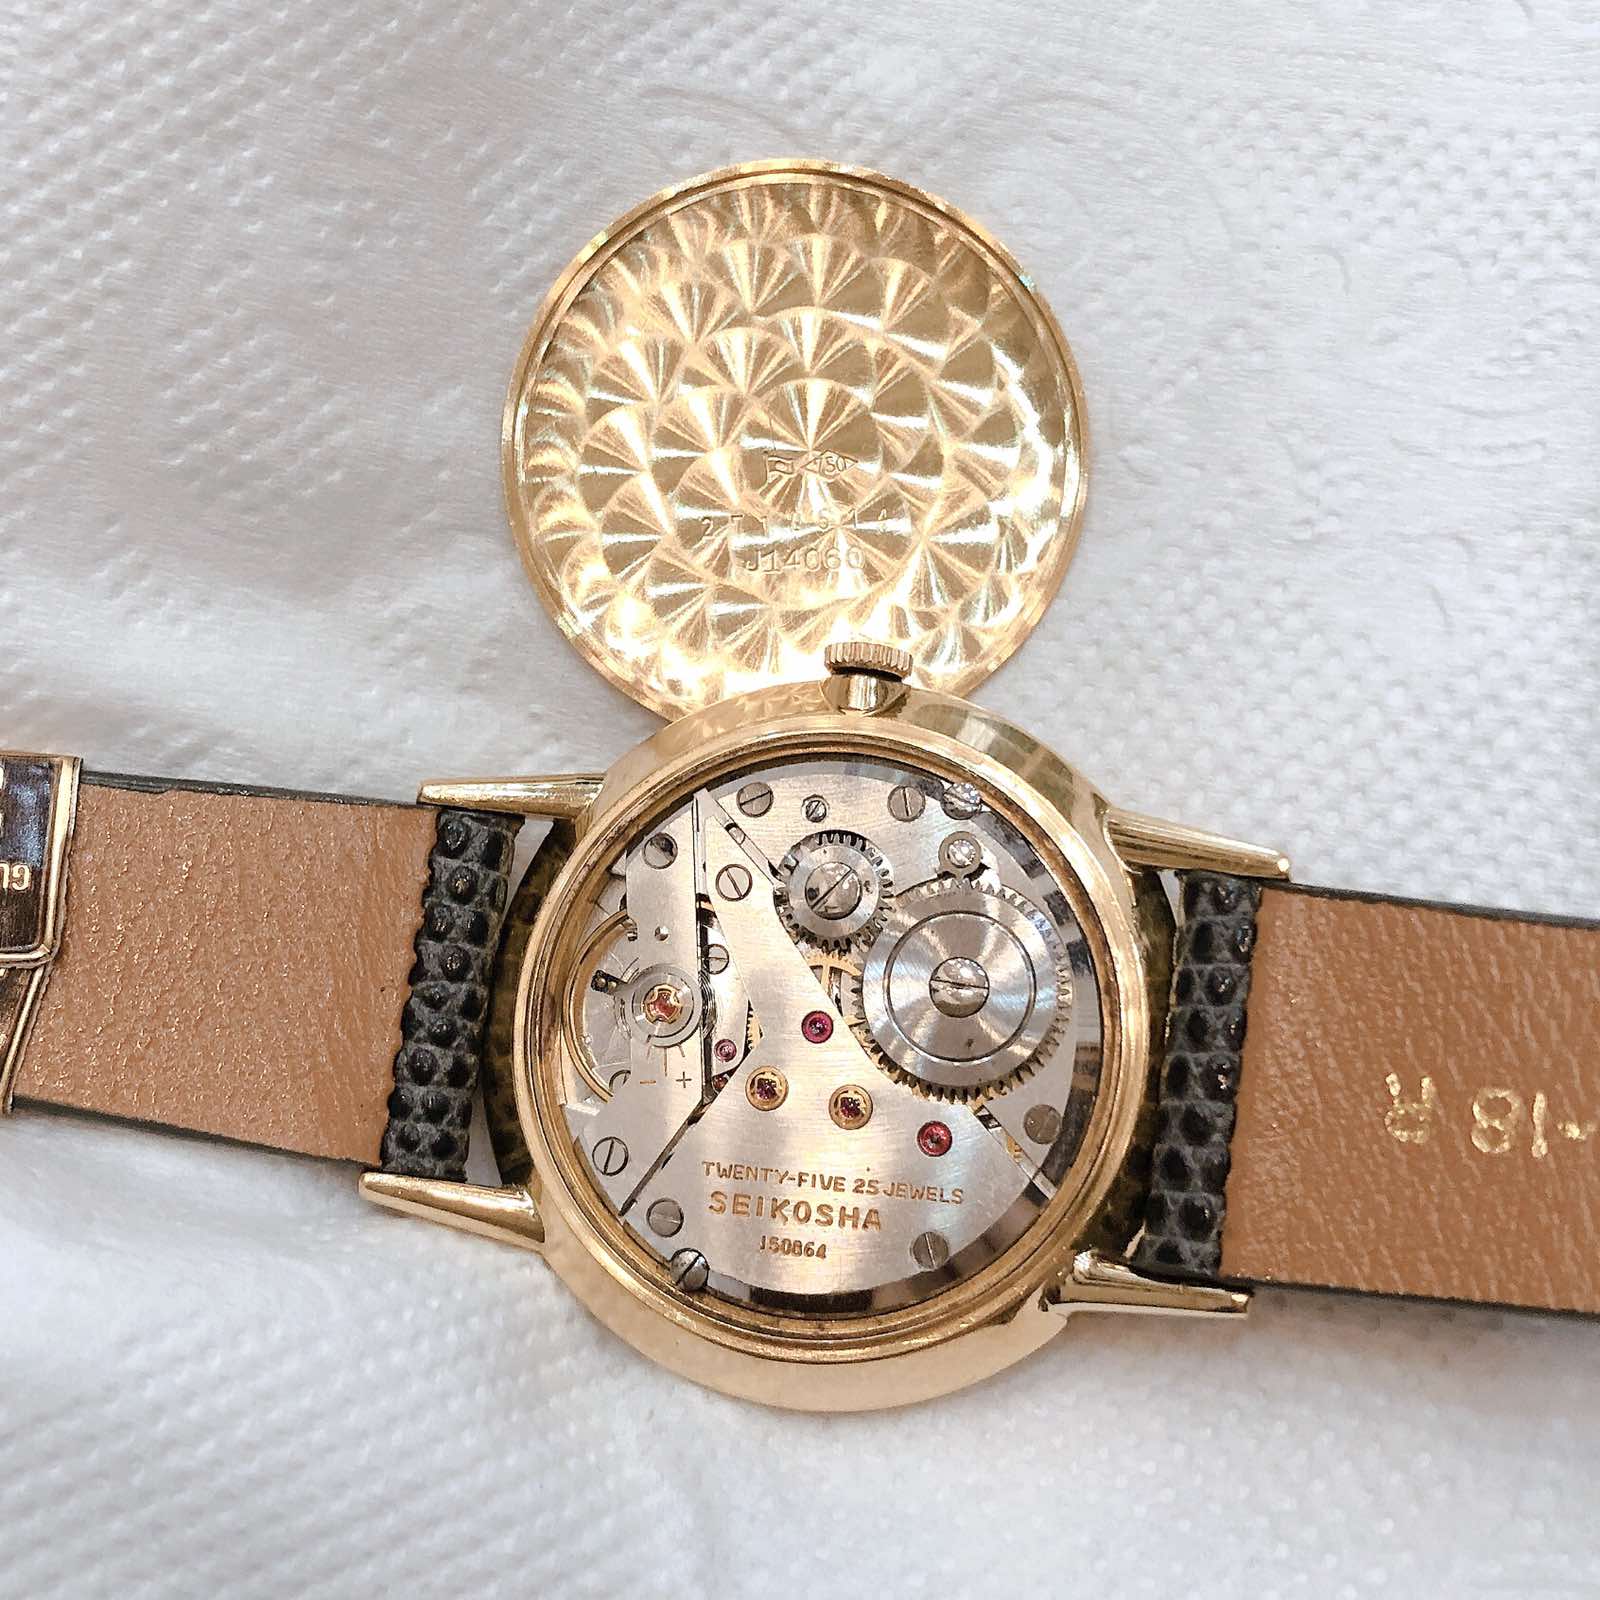 Đồng hồ cổ Seiko Goldfeather kim đĩa đính xoàn vàng đúc đặc 18k lên dây chính hãng nhật bản